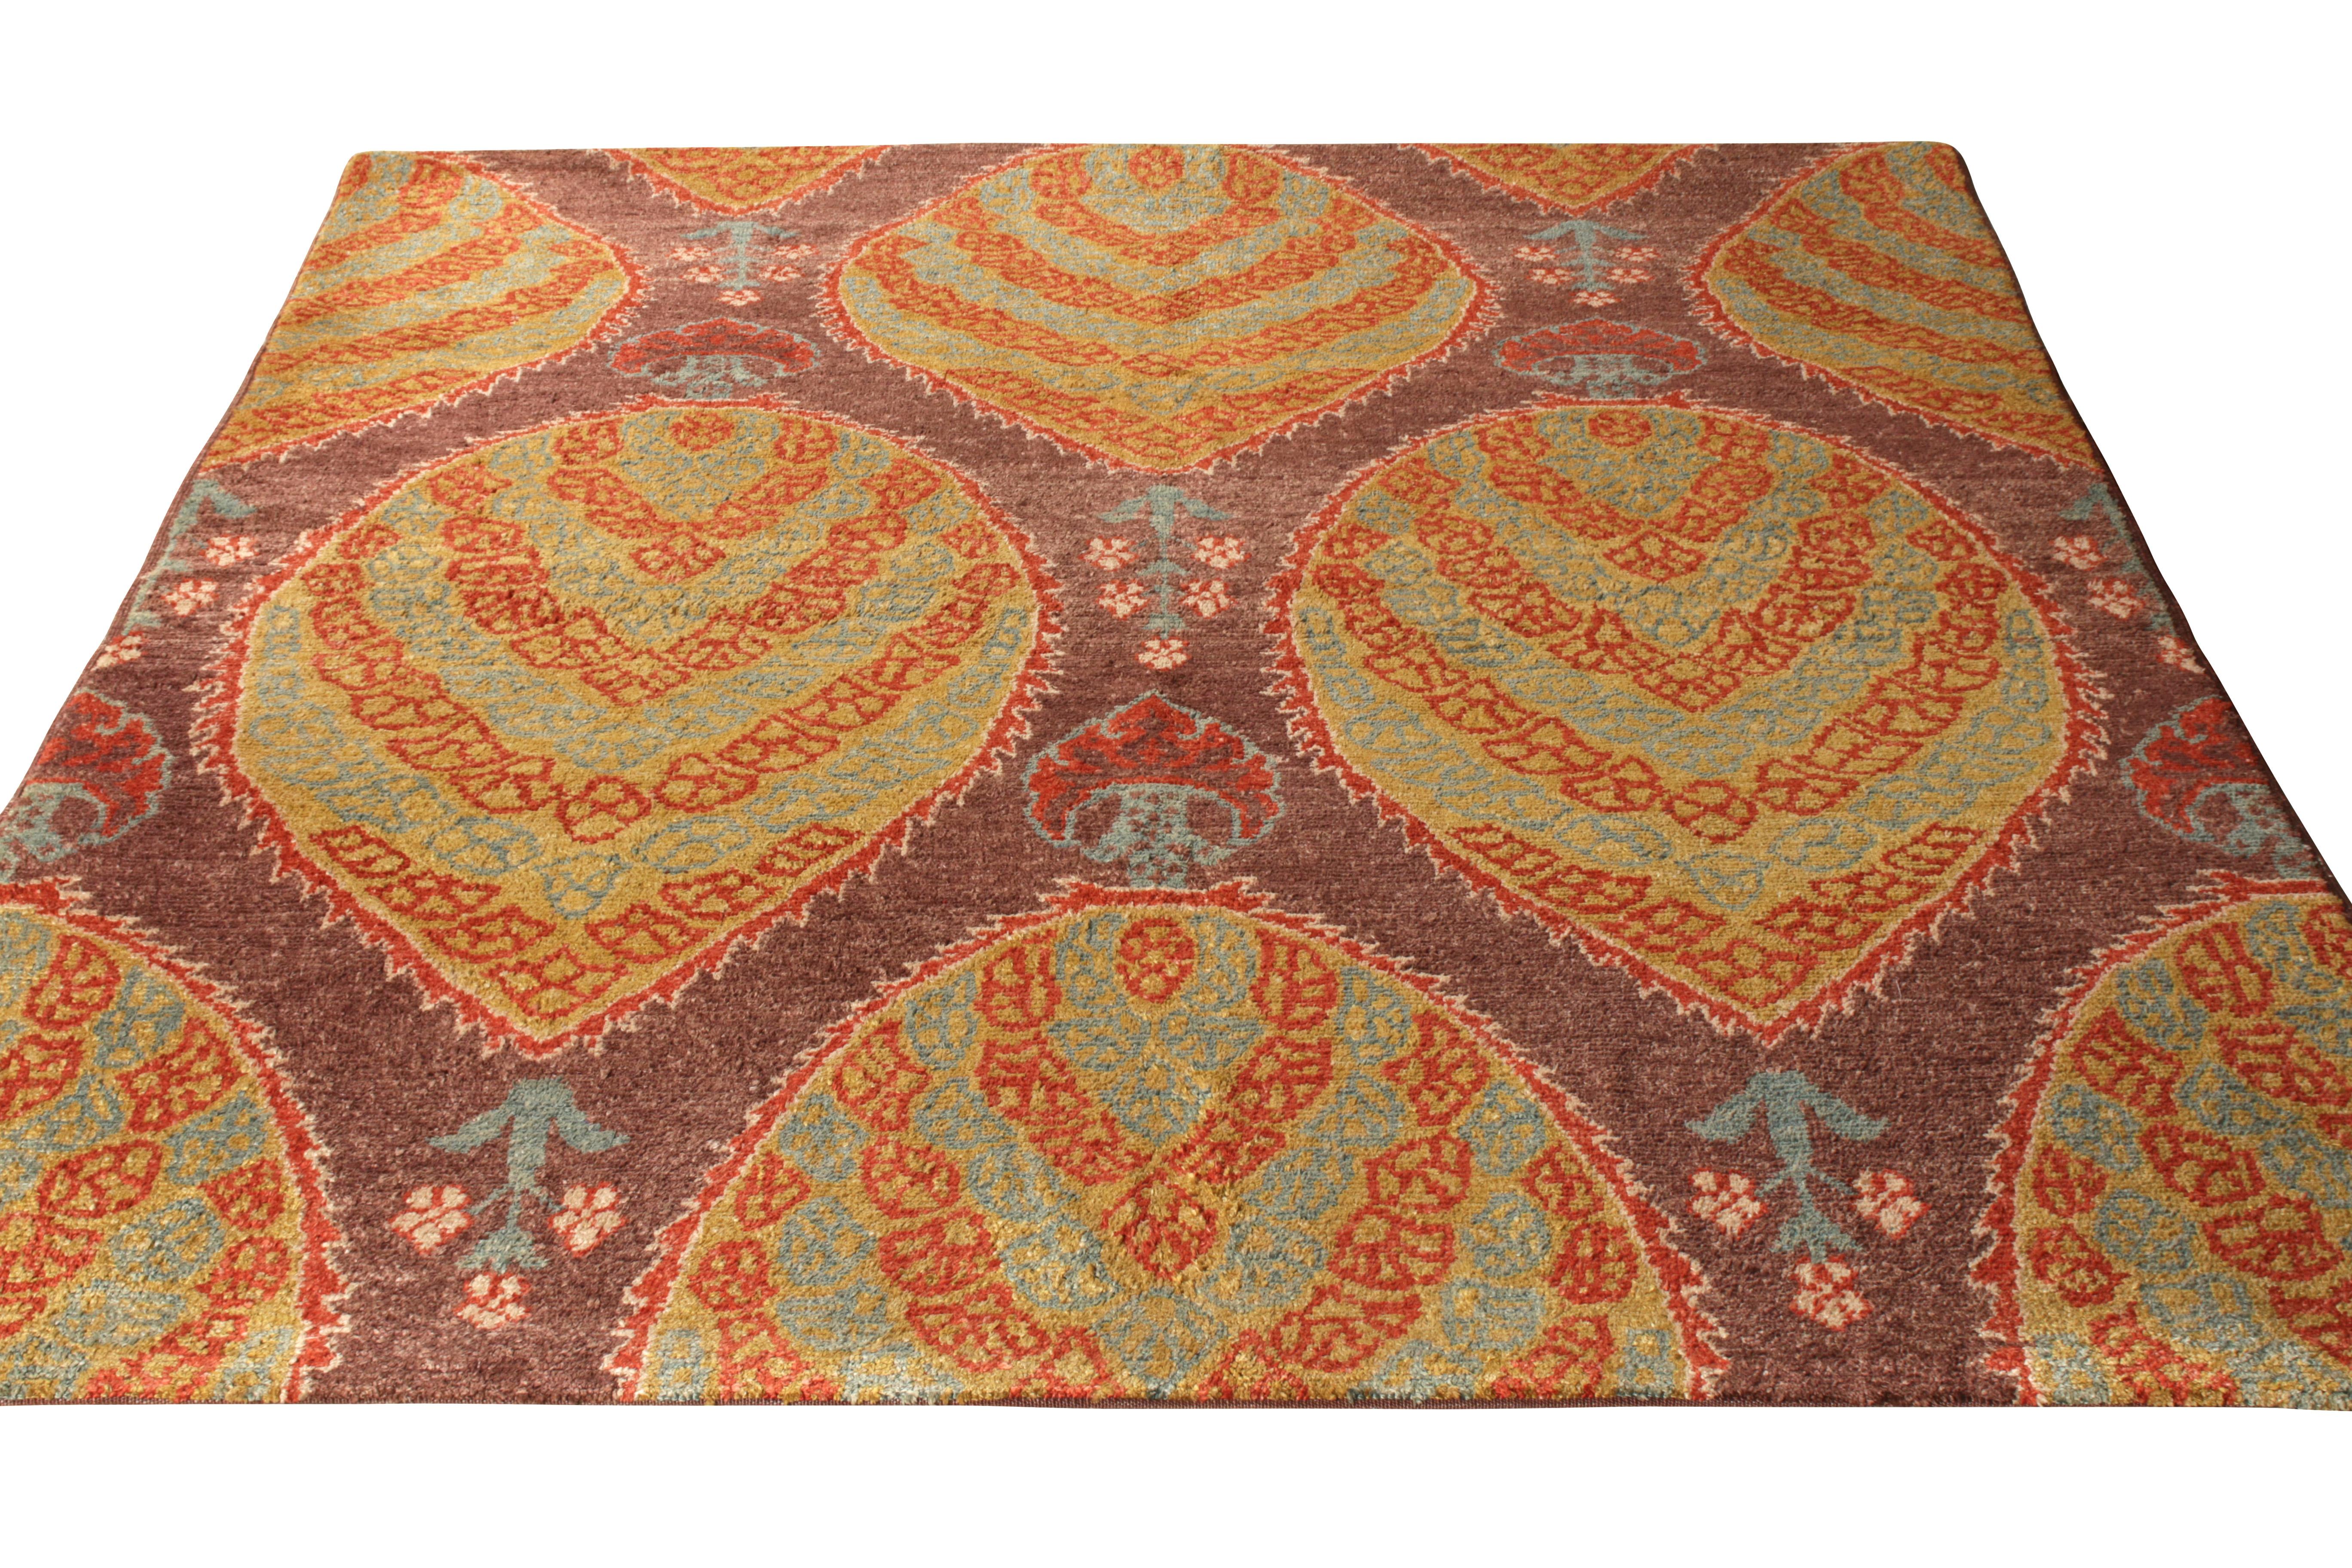 Dieser handgeknüpfte Seidenteppich aus der Türkei (ca. 1970-1980) ist Teil der Antique & Vintage Kollektion von Rug & Kilim. Der Teppich gehört zu den Werken von George Ravmamovich und zeichnet sich durch ein außergewöhnliches florales Muster aus,